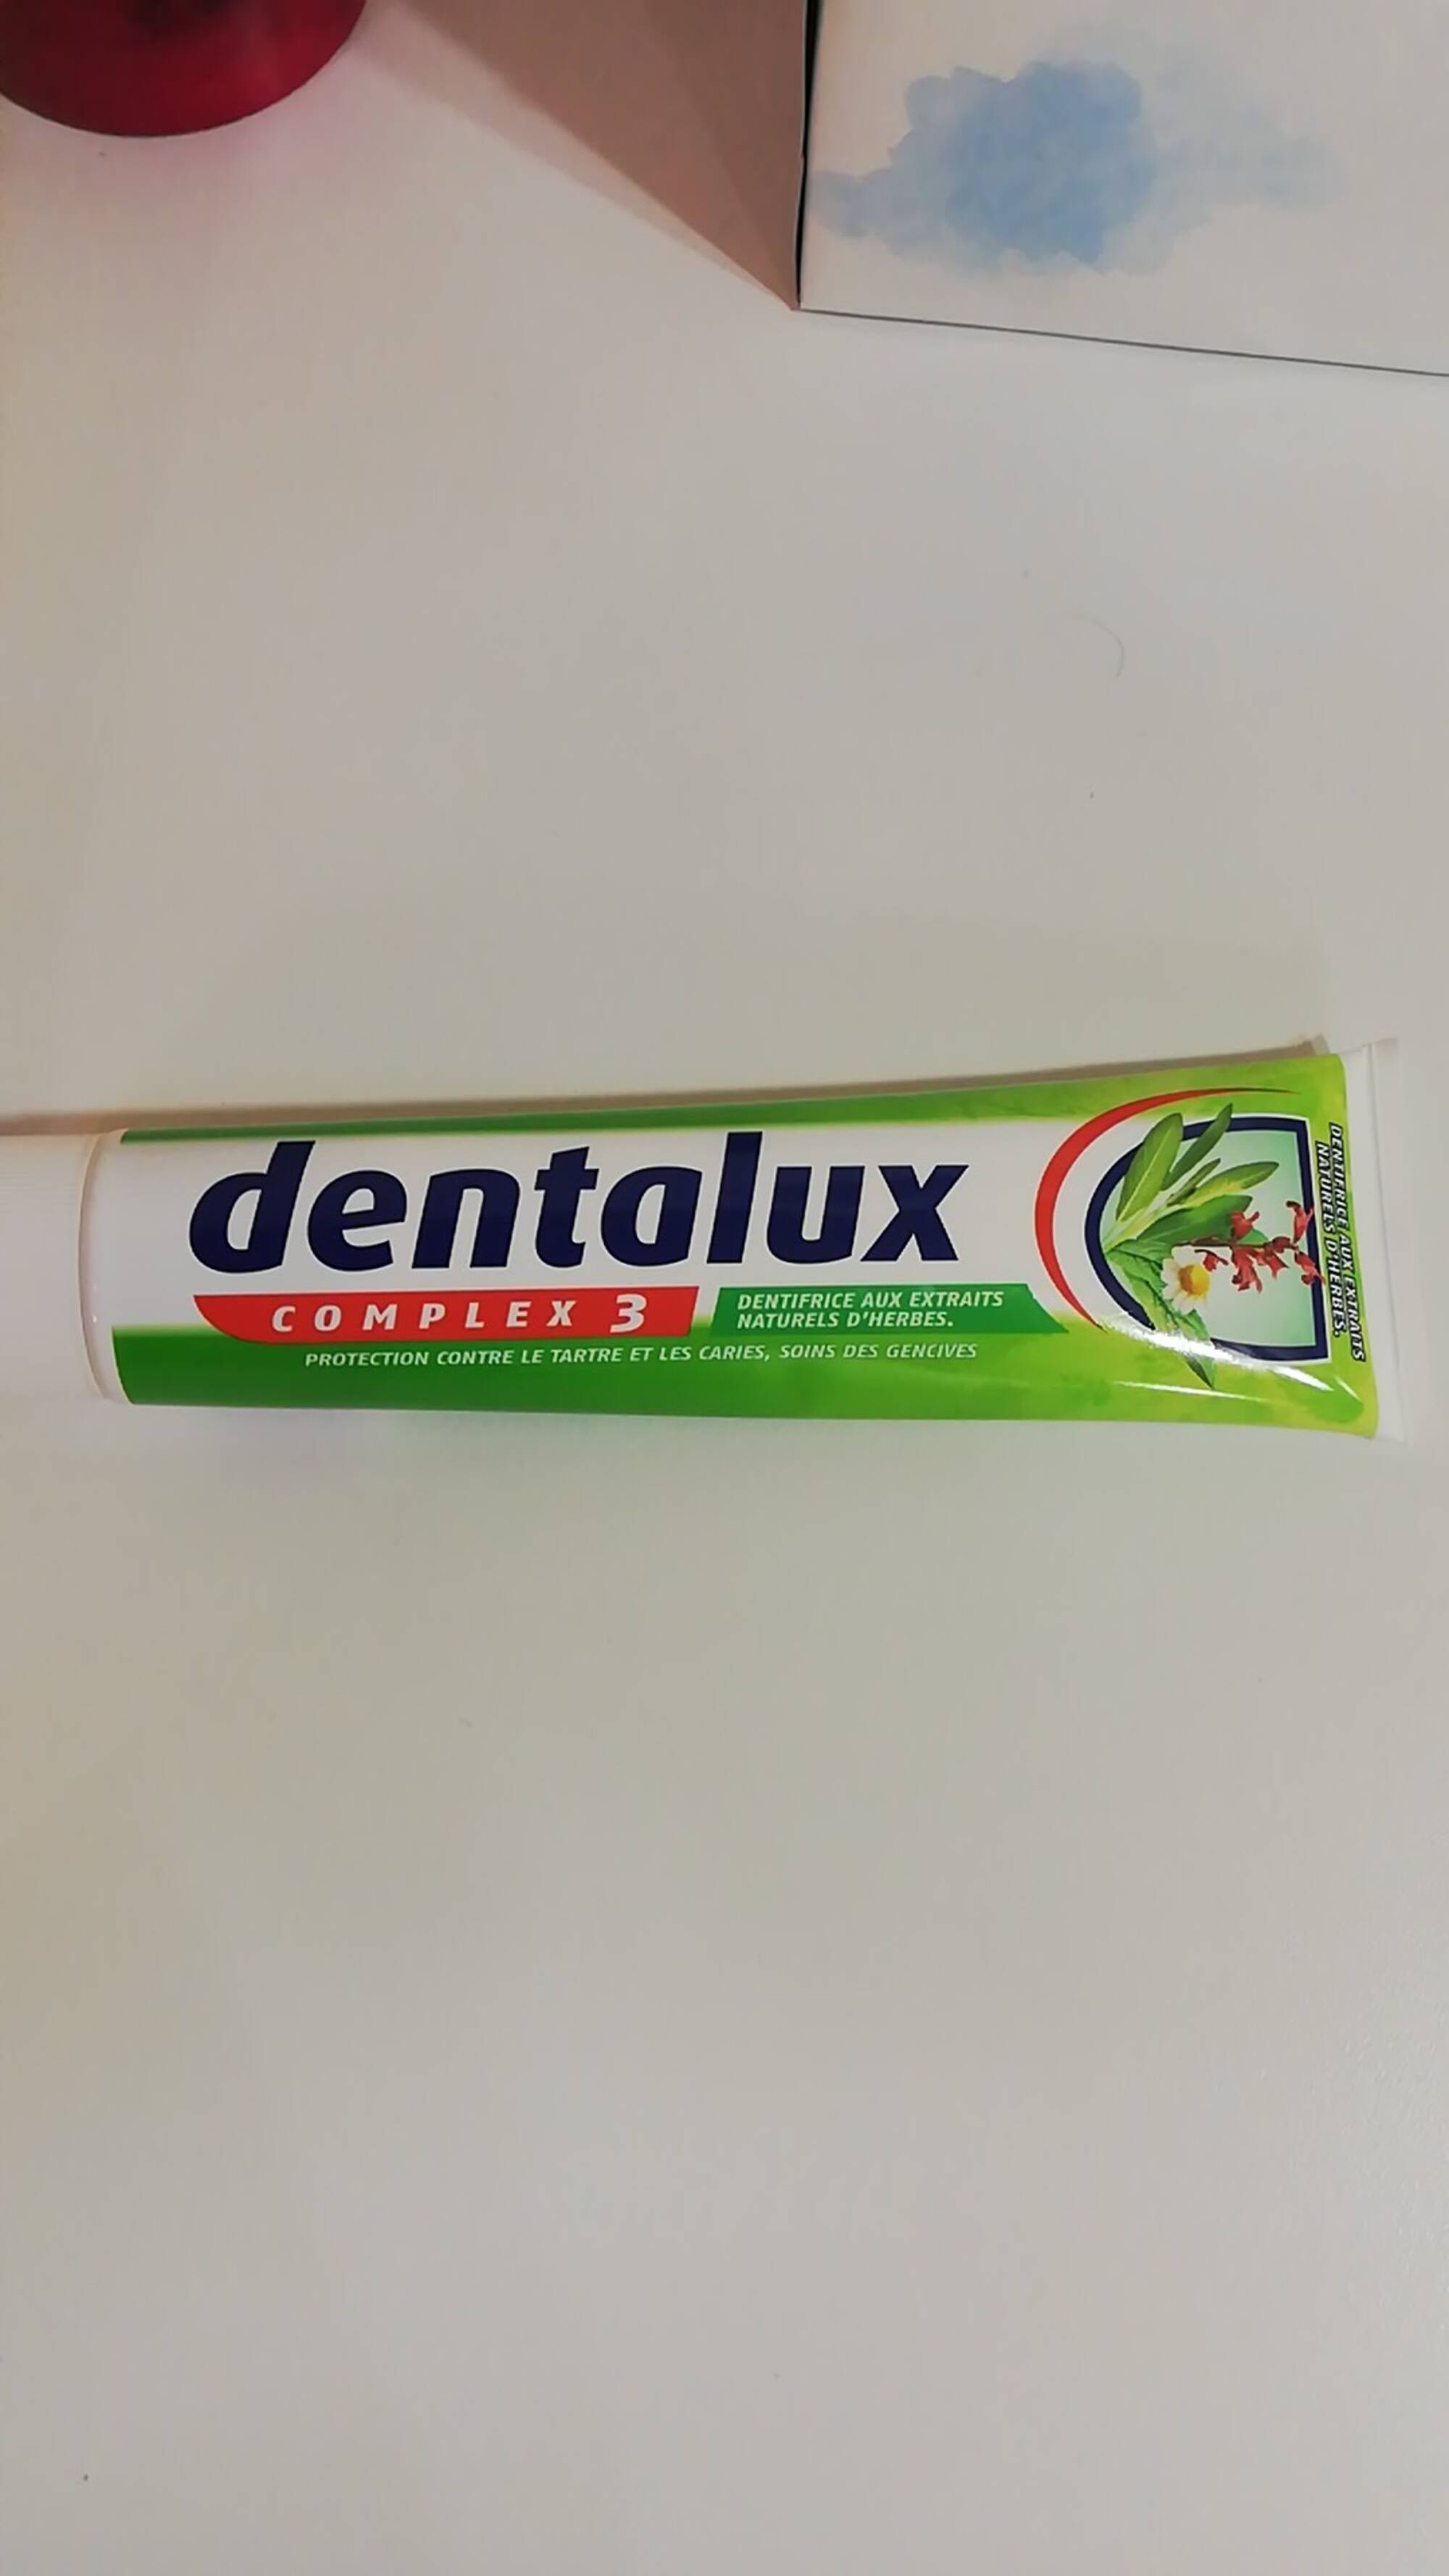 DENTALUX - Dentifrices aux extraits naturels d'herbes